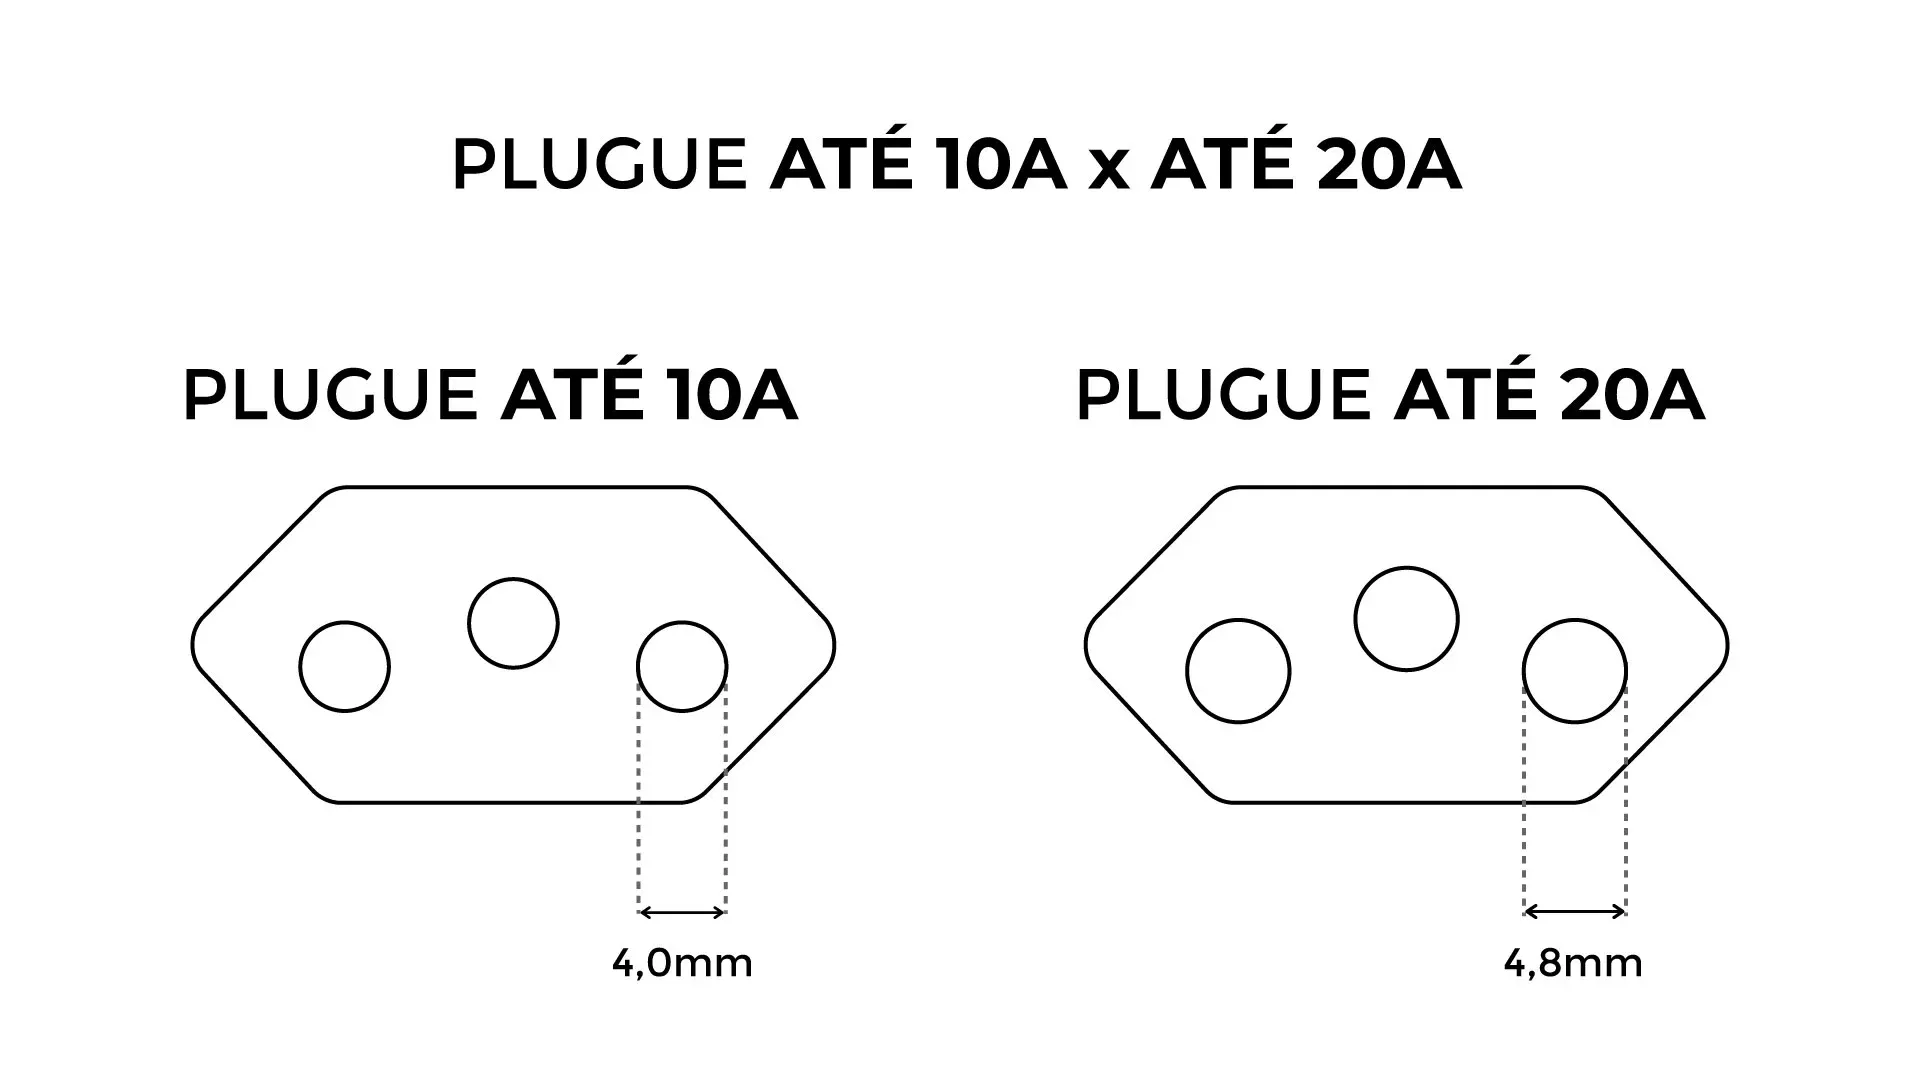 Ilustração que compara o tamanho das tomadas de até 10A e até 20A. O plugue até 10A tem entradas de 4,0mm de diâmetro, enquanto que as entradas de até 20A são mais grossas, com 4,8mm de diâmetro.